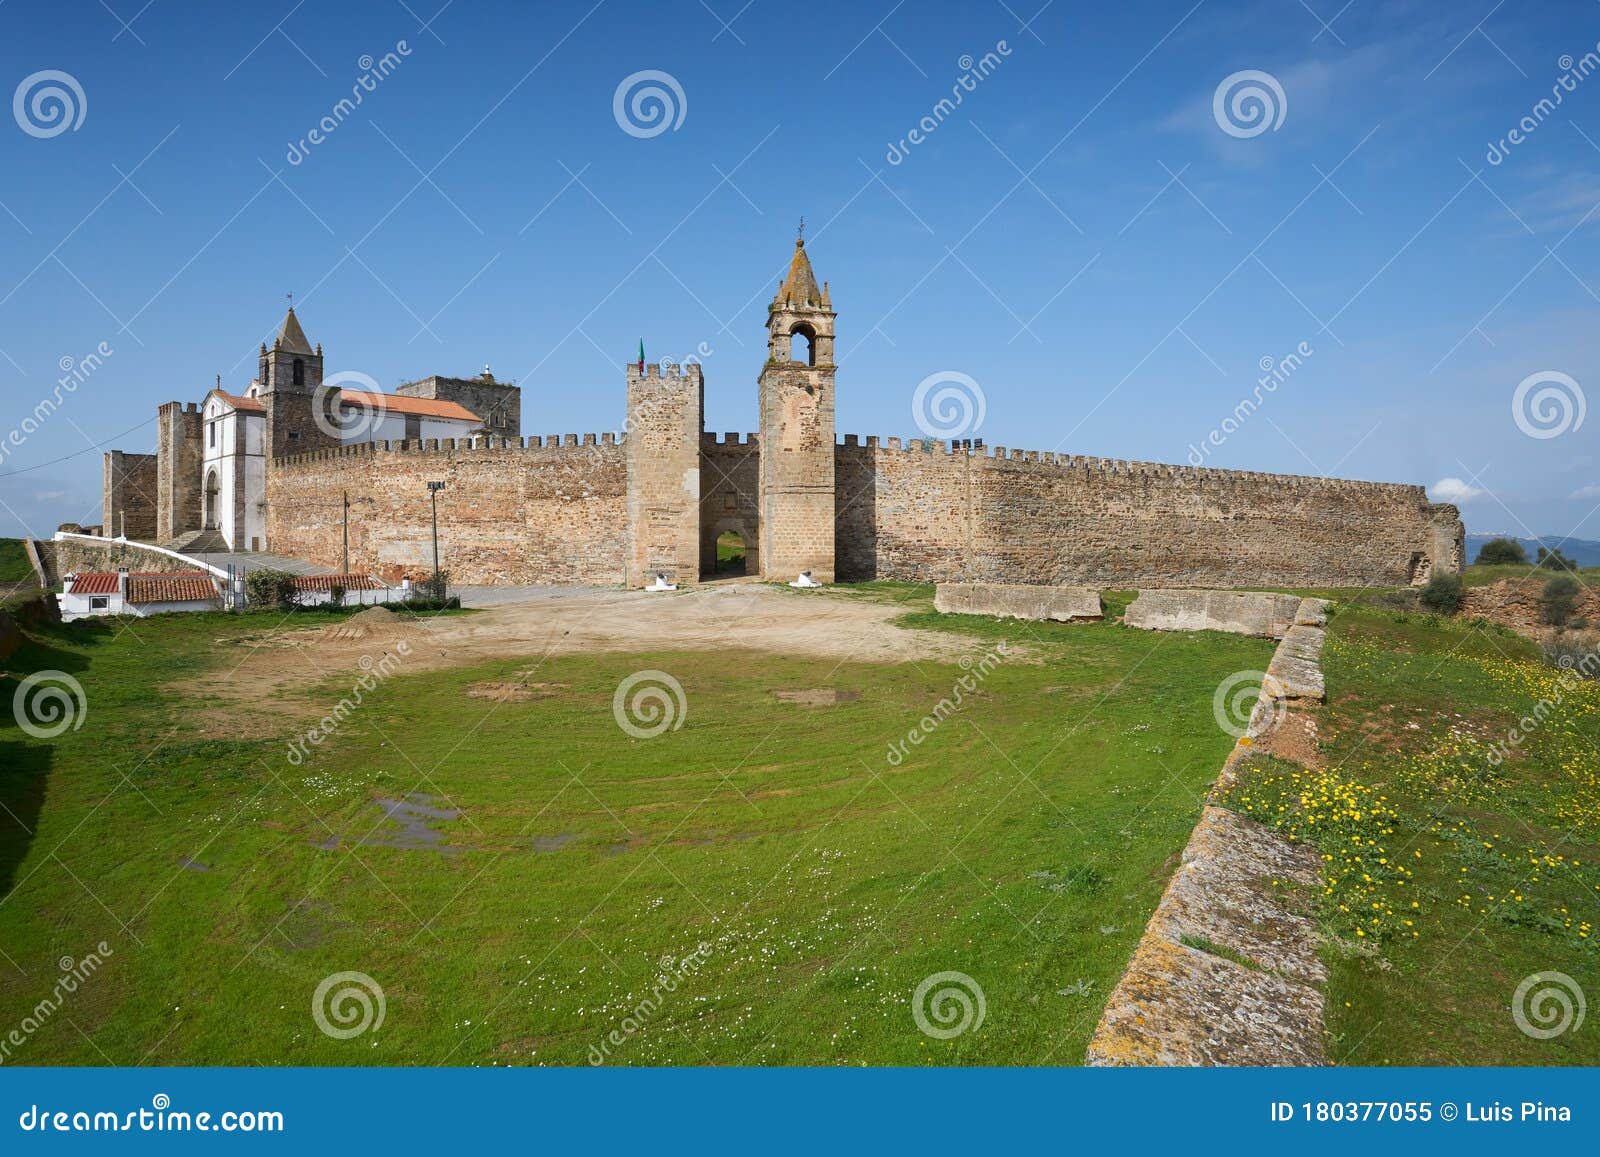 mourao castle facade entrance with tower in alentejo, portugal